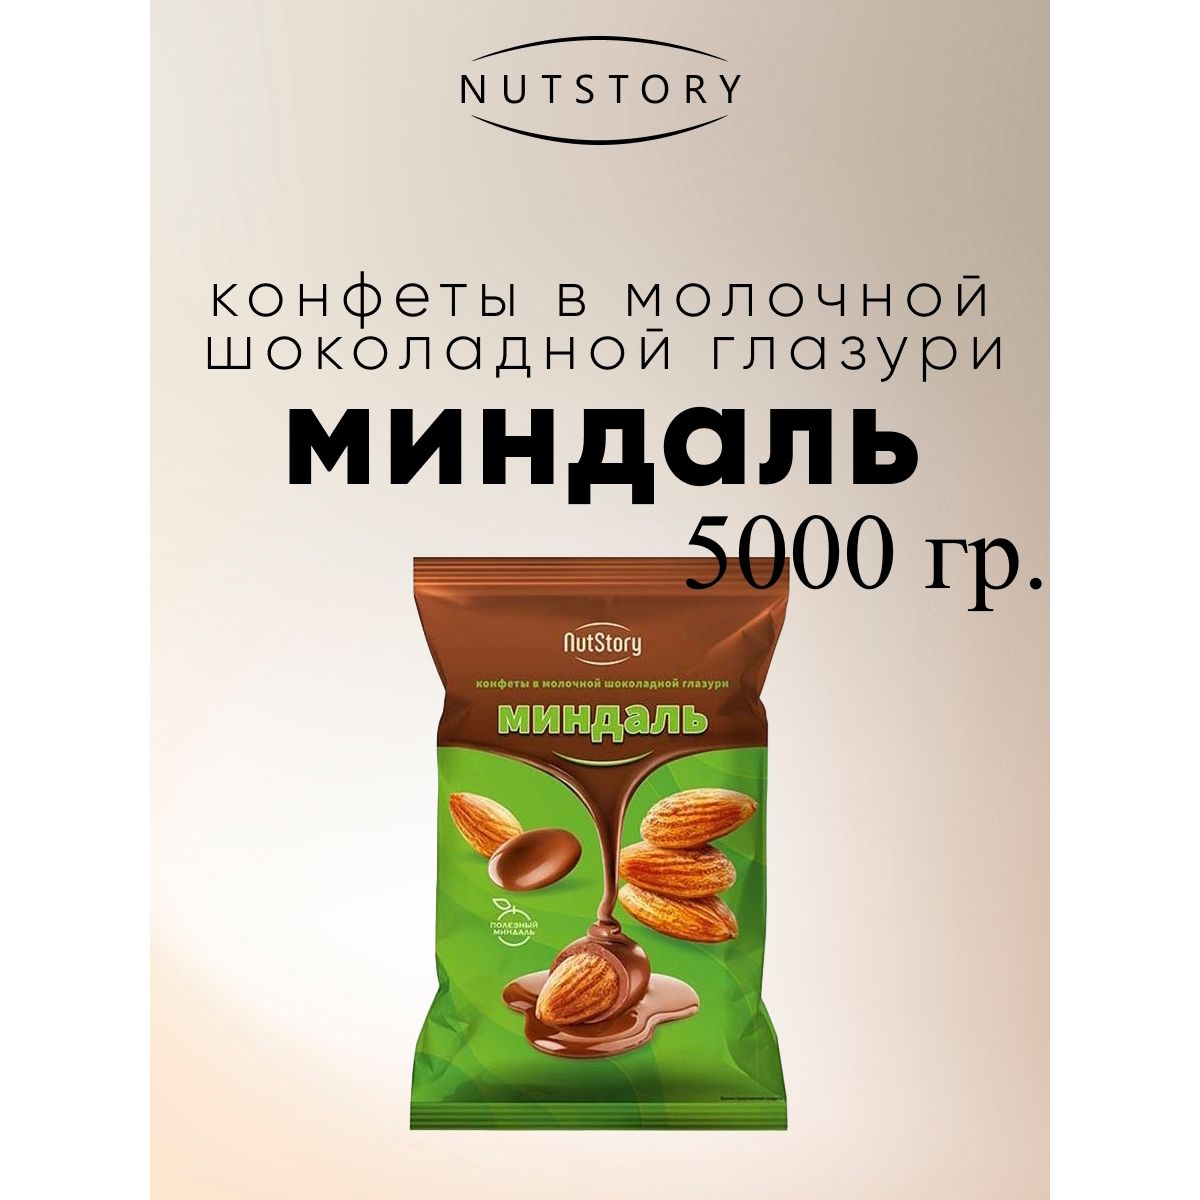 Конфеты Озерский сувенир NutStory Миндаль в молочной шоколадной глазури, 5 кг